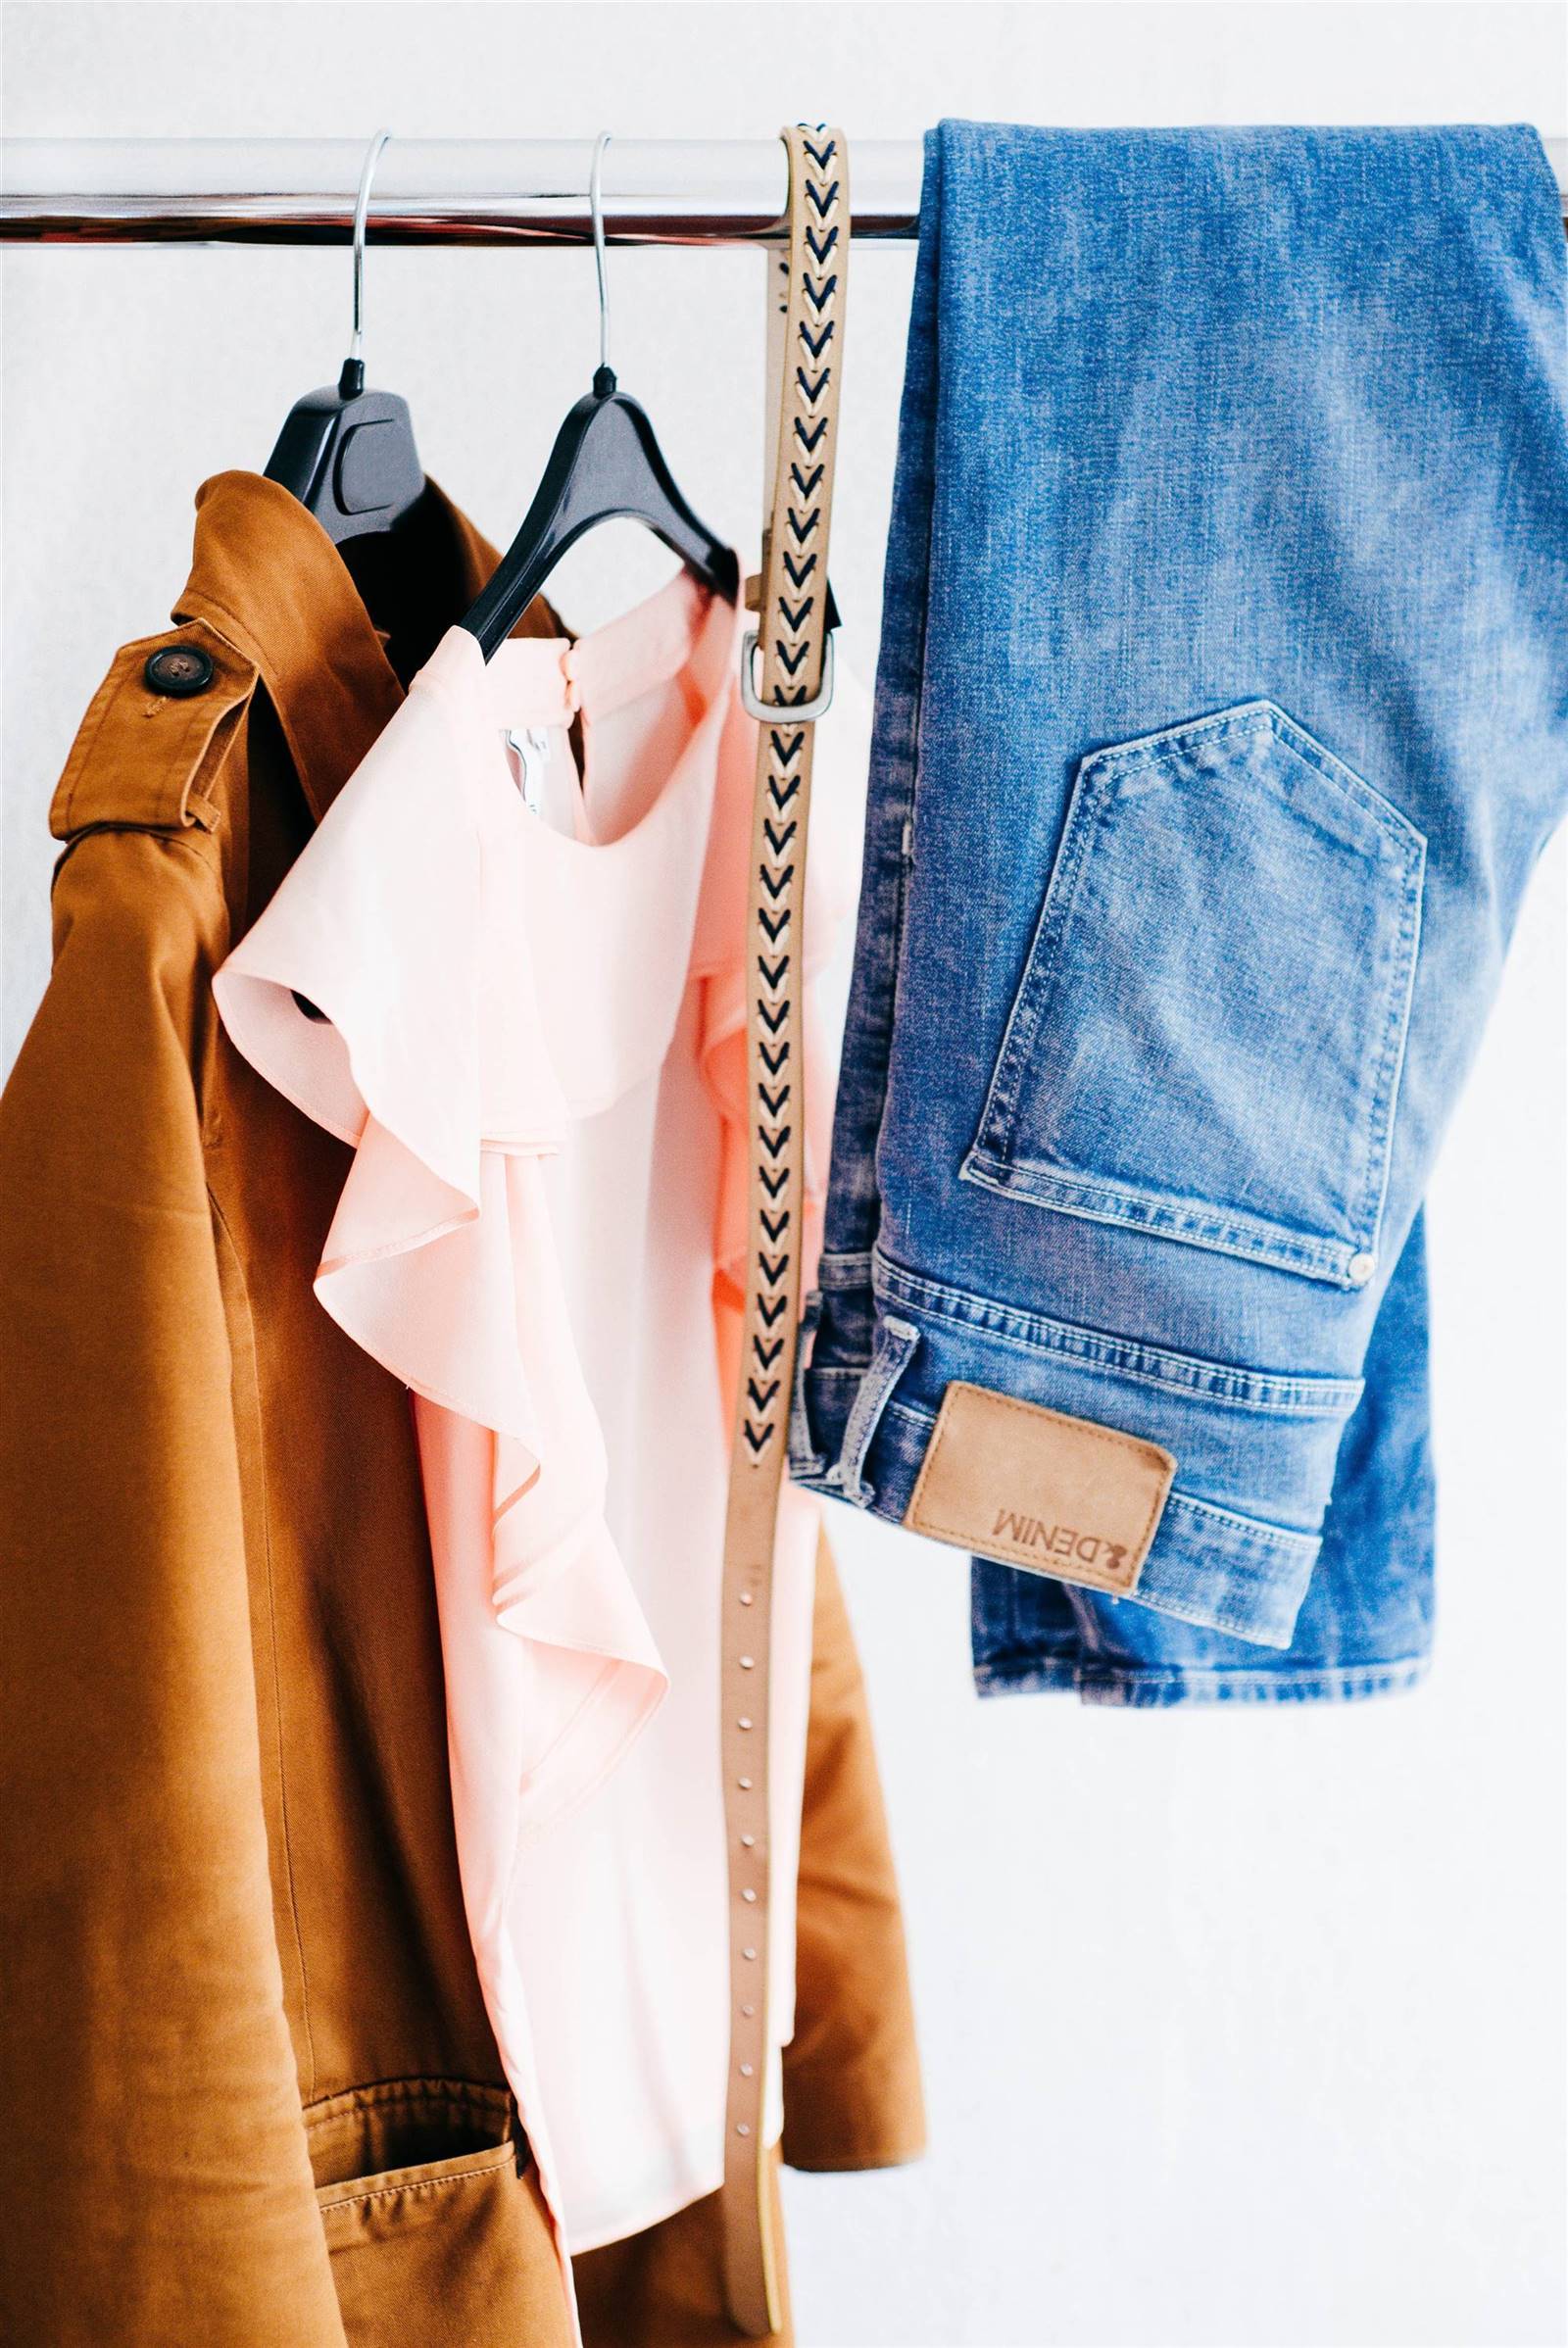 Organiza la ropa que no usas pero necesitas guardar